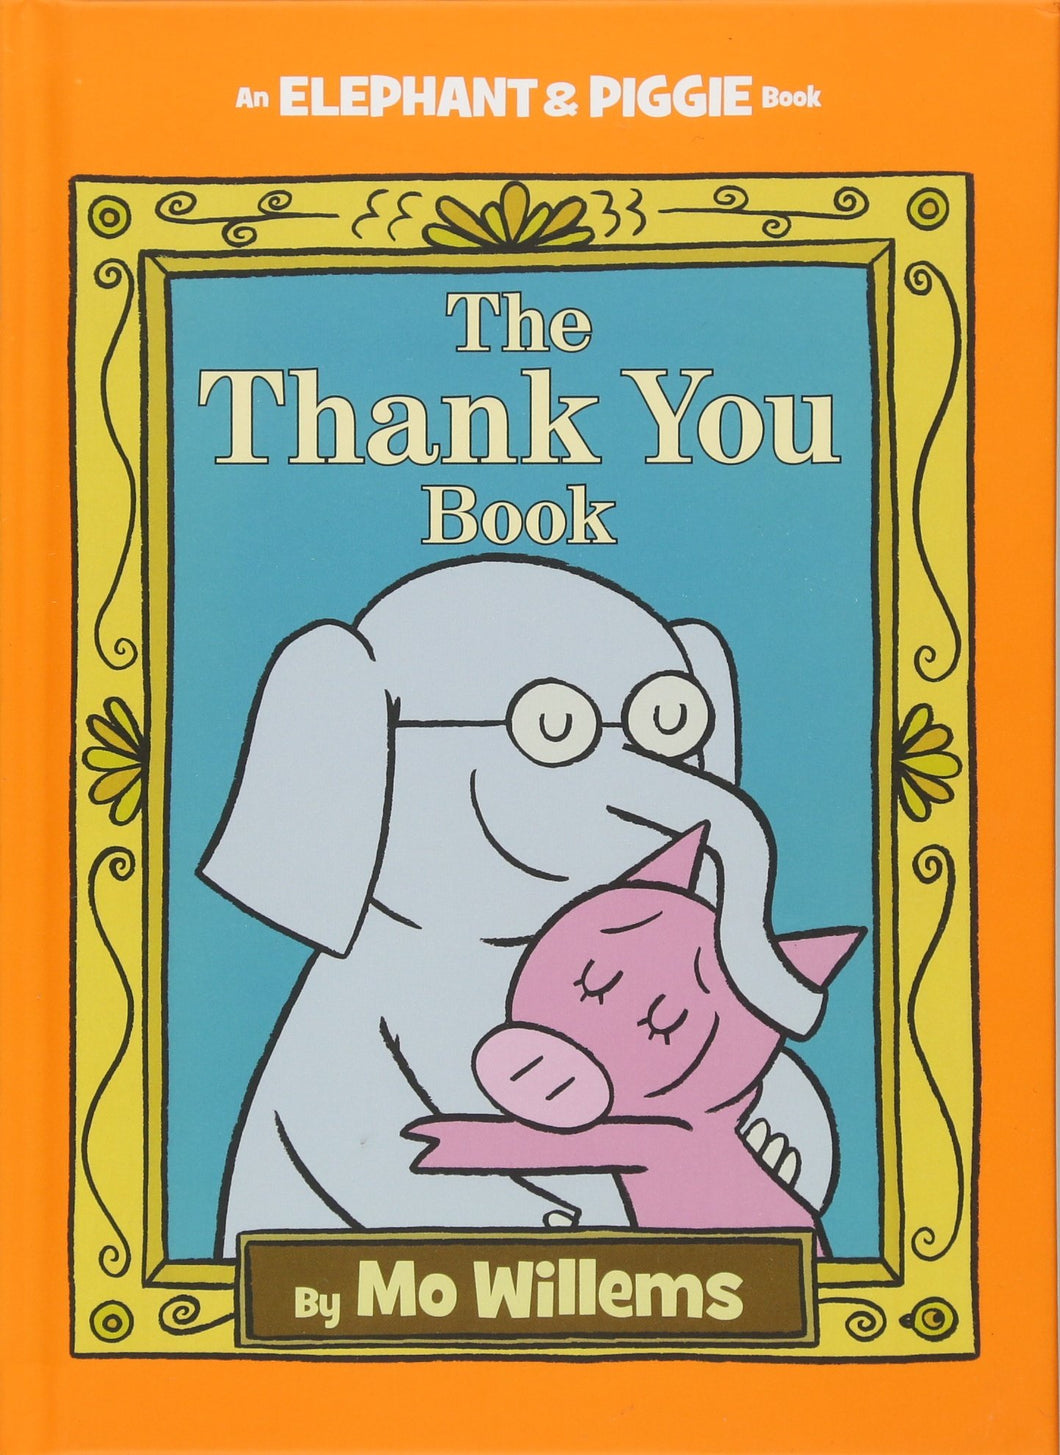 Thank You Book, The: An Elephant & Piggie Book mo willems esikidz marketplace children books preschool books 